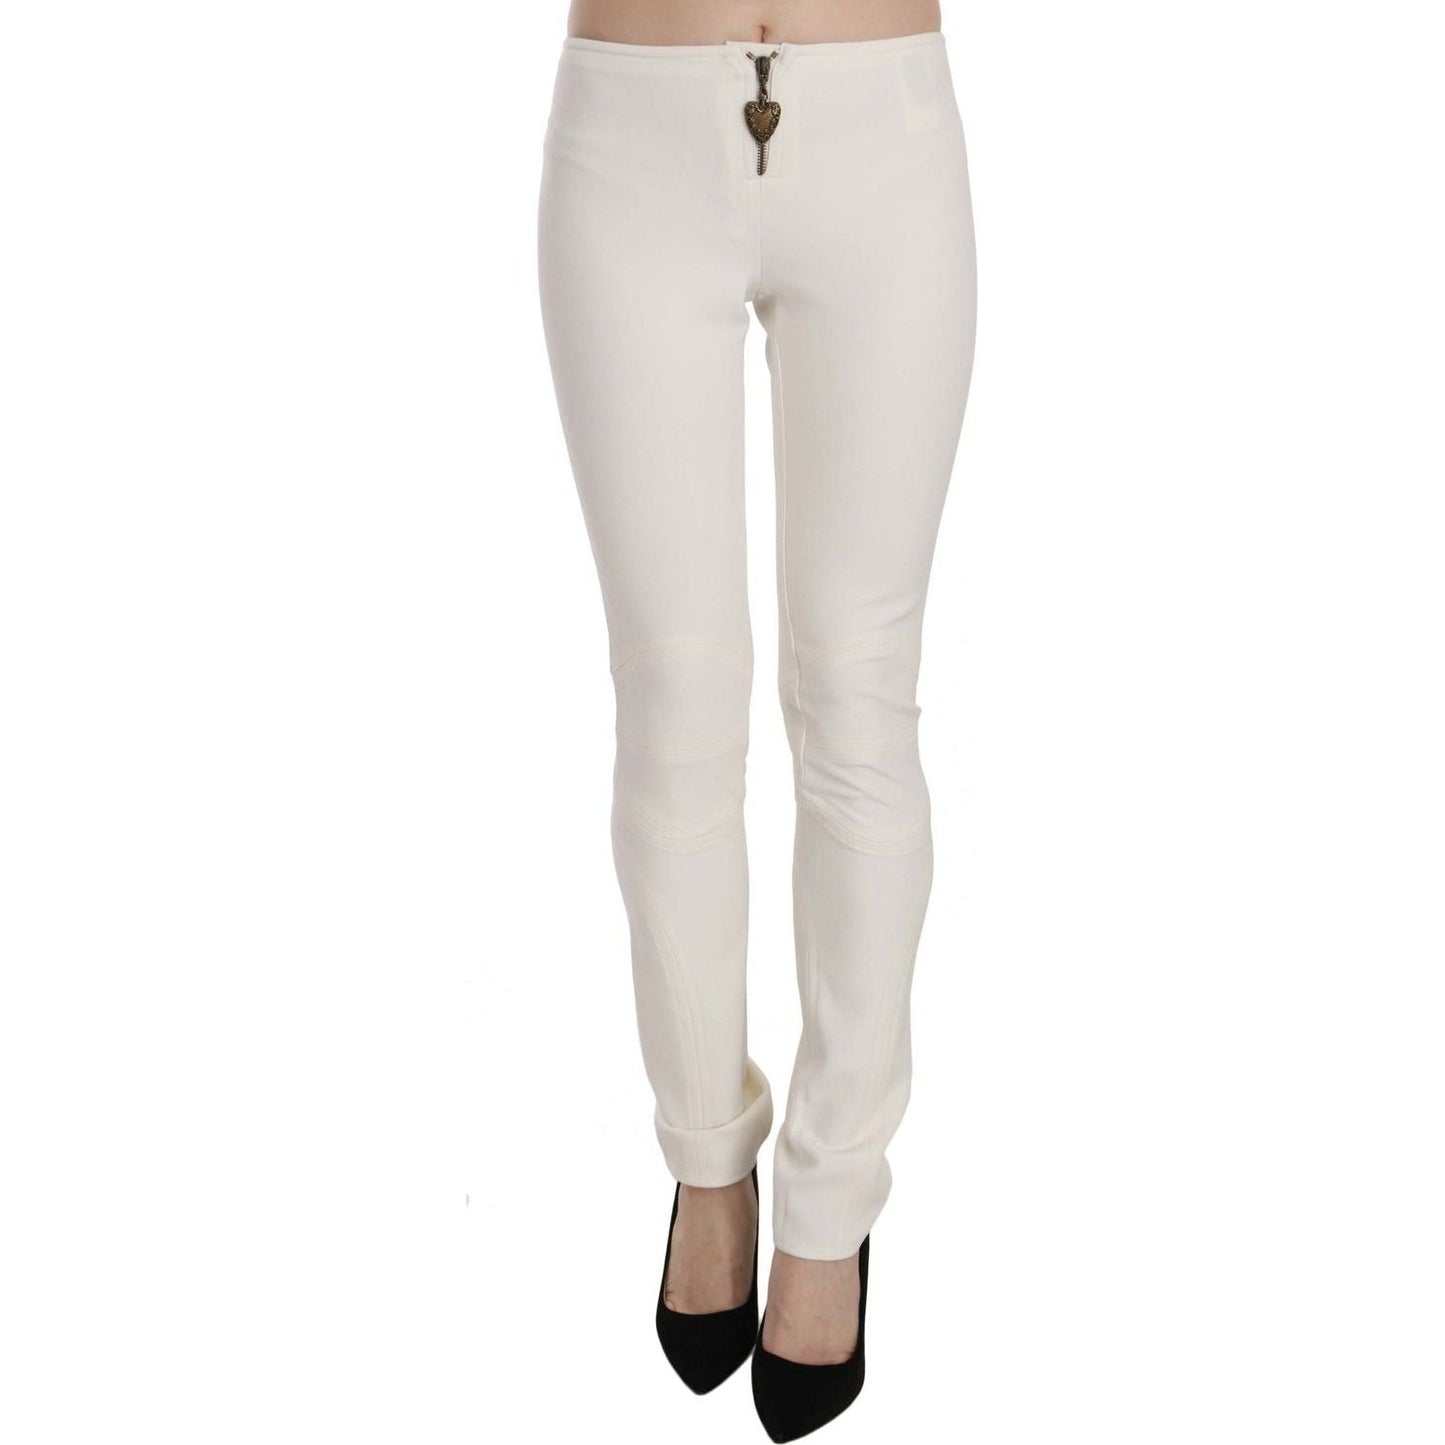 Just Cavalli Elegant Mid Waist Skinny Dress Pants white-mid-waist-skinny-dress-trousers-pants IMG_6201-scaled-b057a0dc-488.jpg